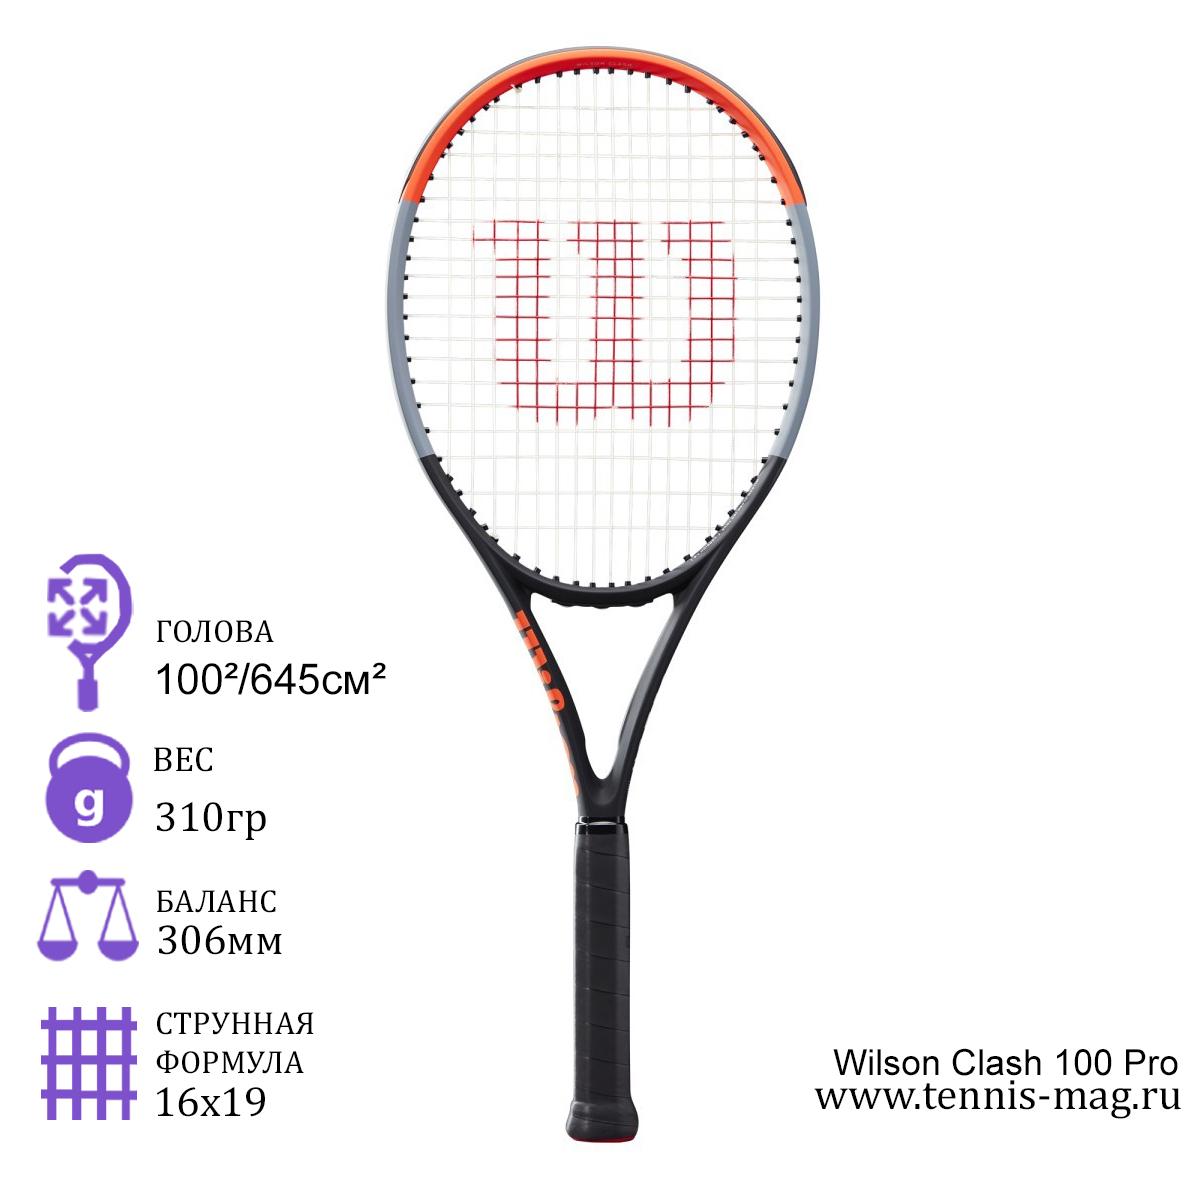 Теннисная ракетка Wilson Clash 100 Pro купить в Москве в интернет-магазине  tennis-mag.ru